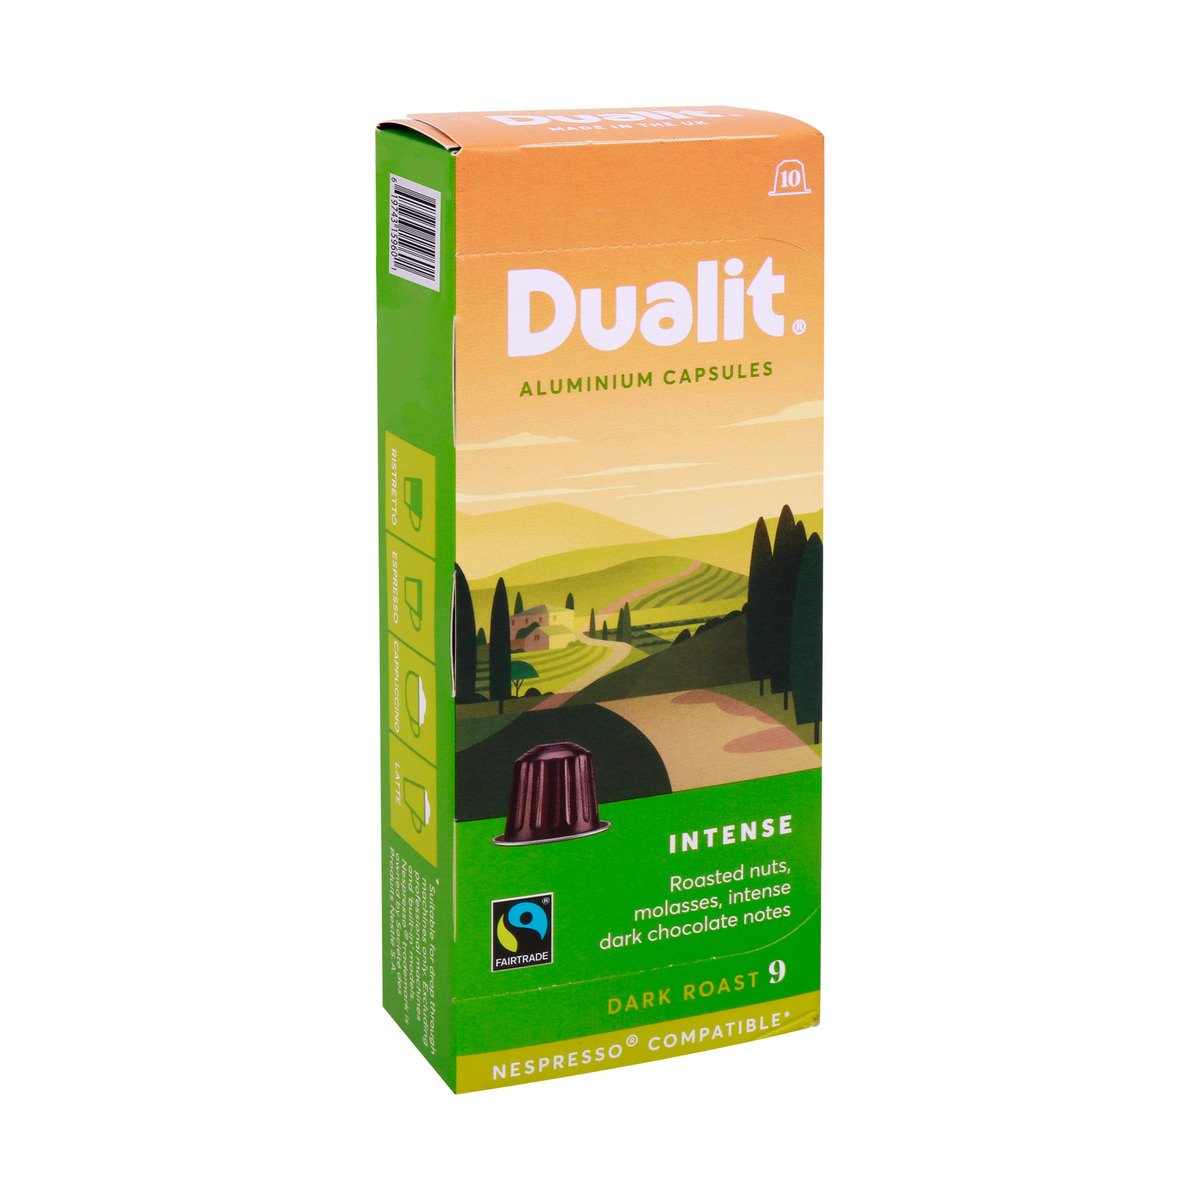 Dualit Aluminium Capsules Dark Roast Intense Coffee 10 pcs 52 g